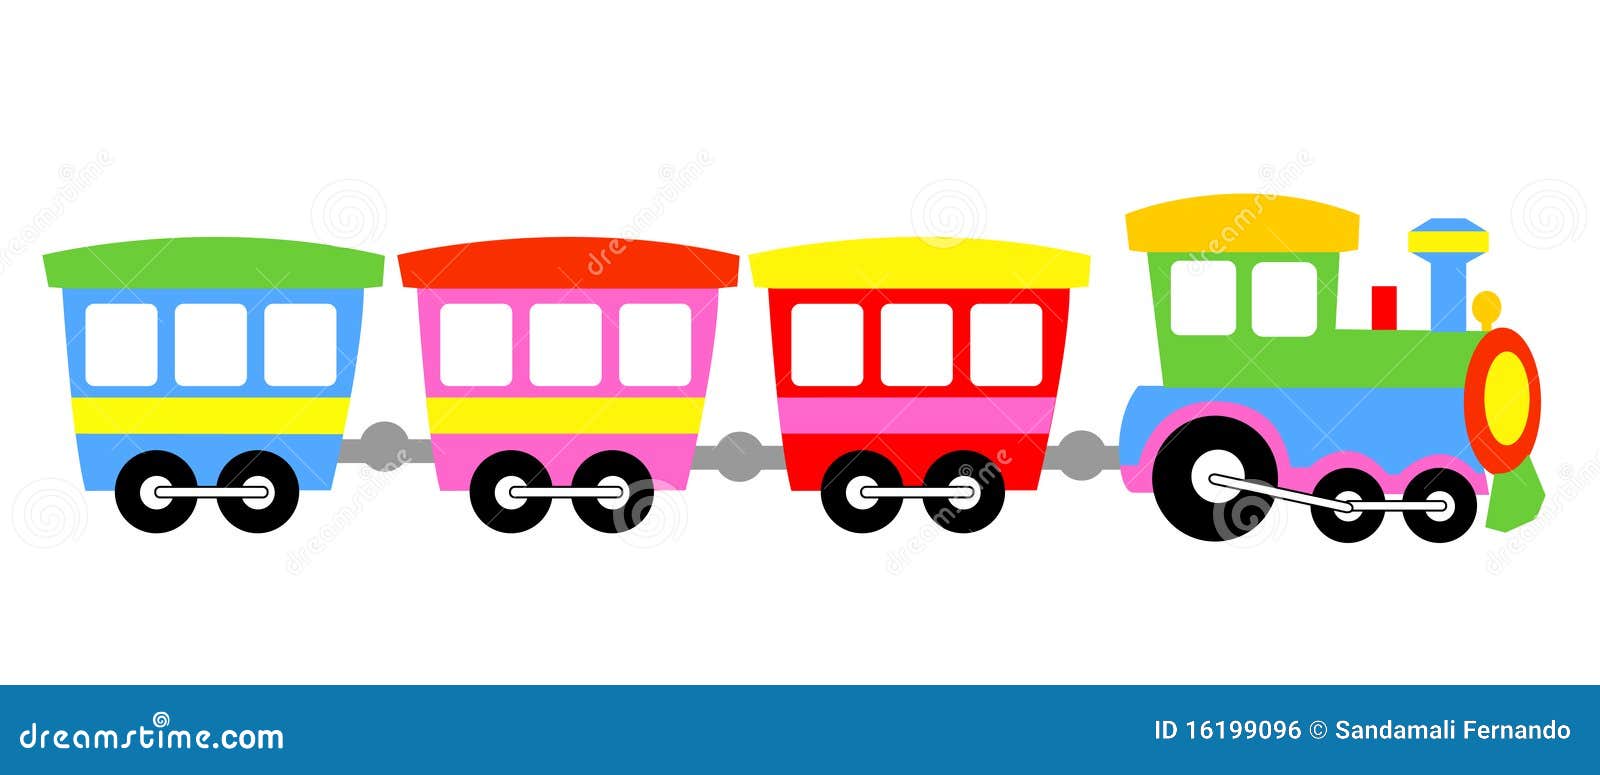 Trem De Brinquedo Brinquedos Jogar - Gráfico vetorial grátis no Pixabay